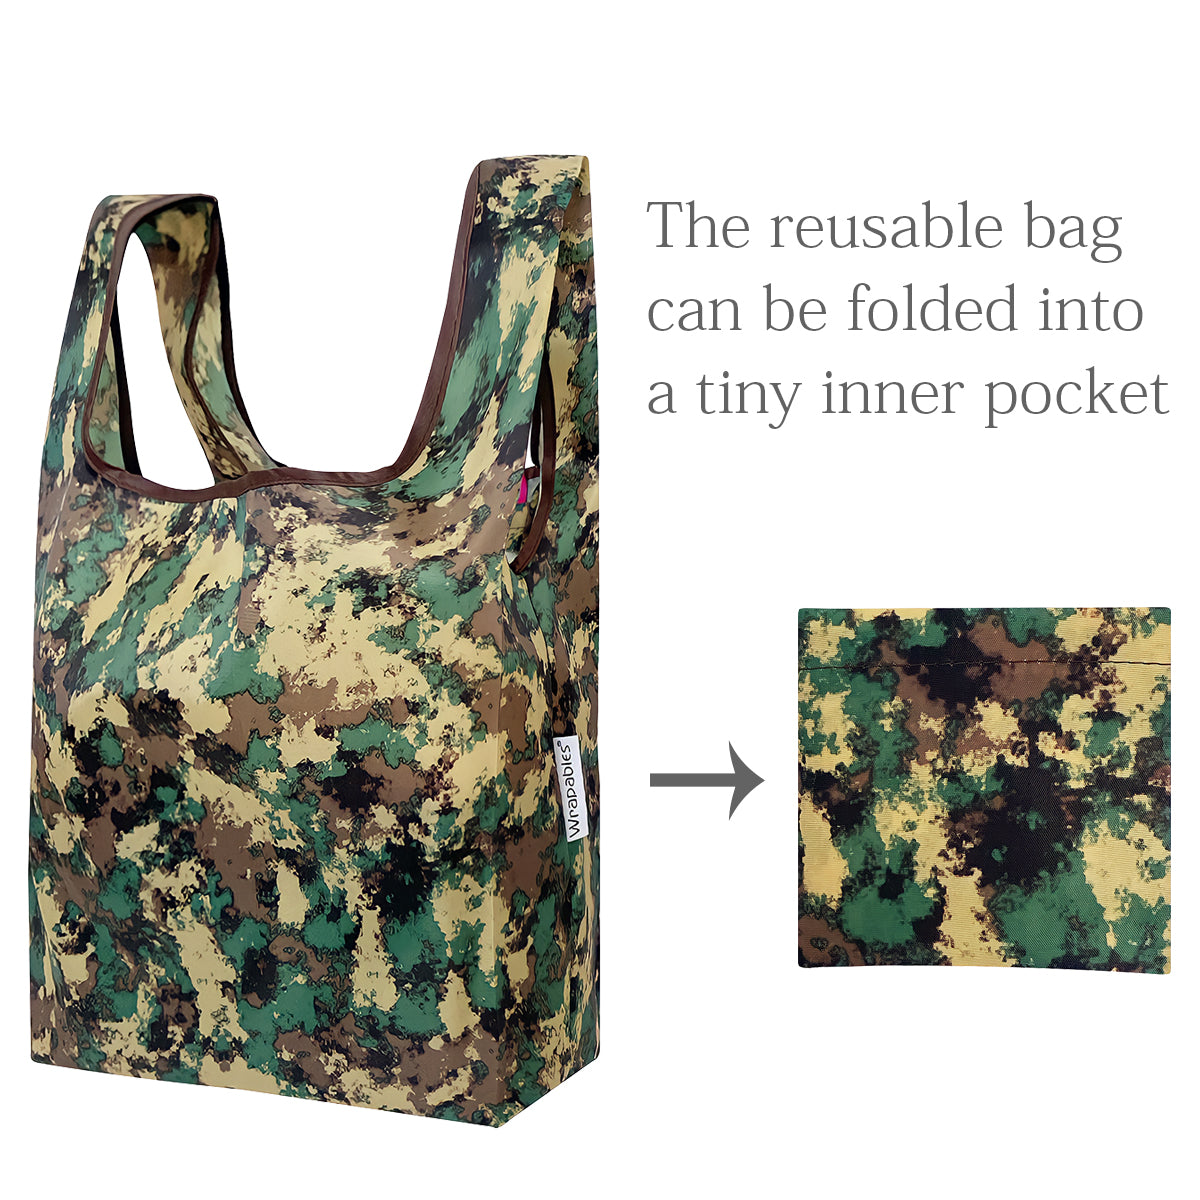 Wrapables JoliBag Nylon Reusable Grocery Bag, Set of 4